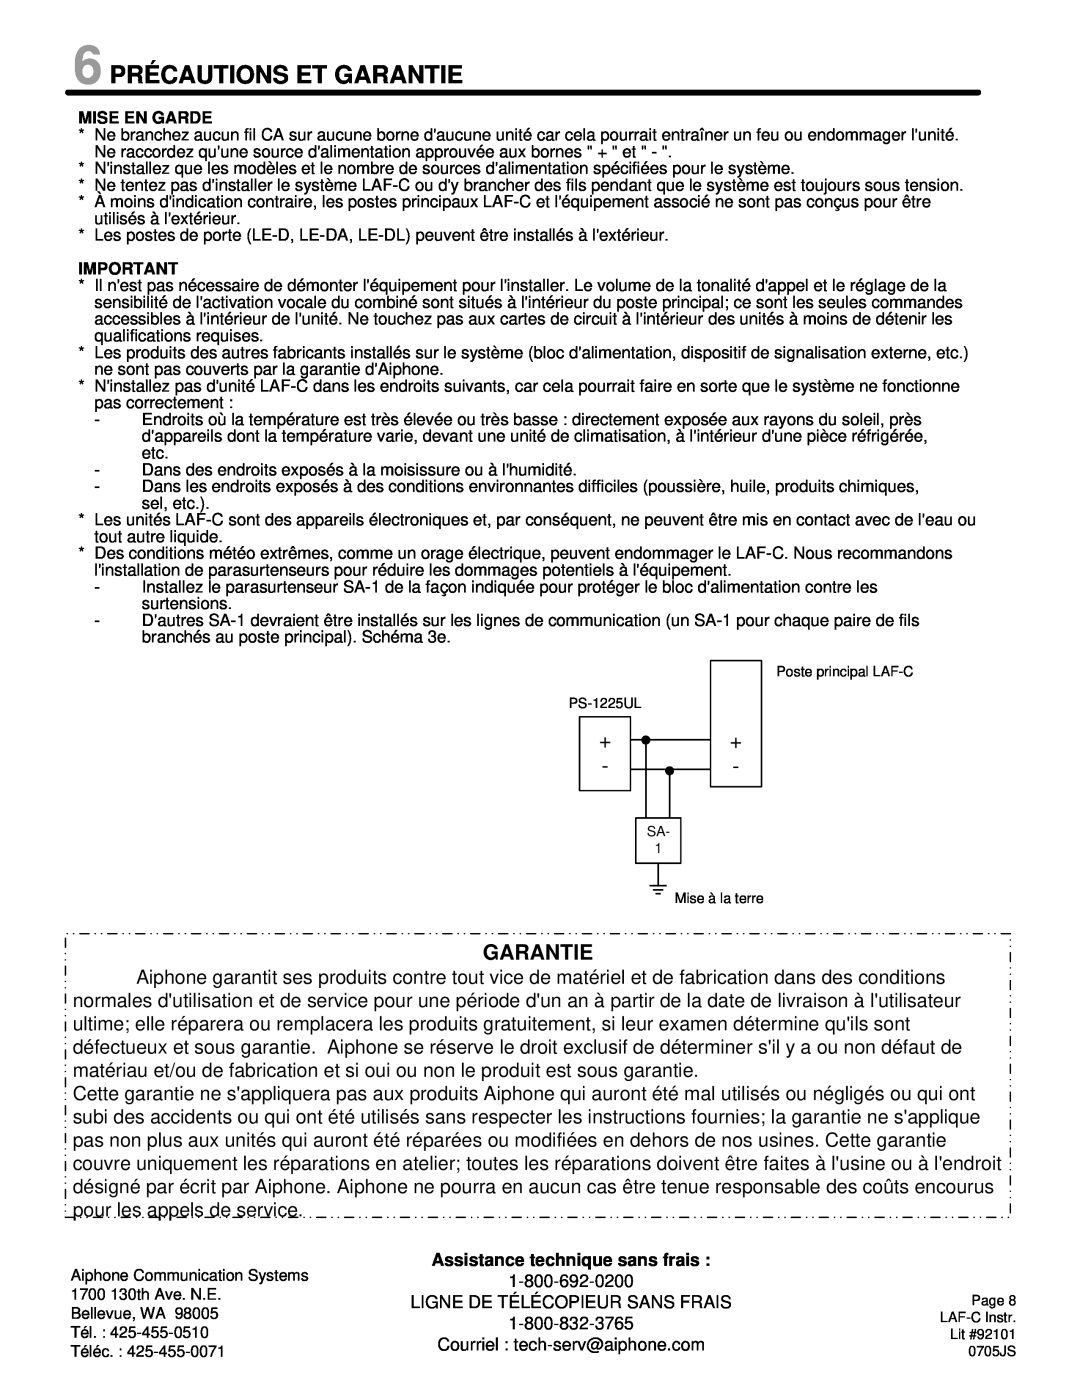 Aiphone LAF-C manual 6 PRÉCAUTIONS ET GARANTIE, Garantie 